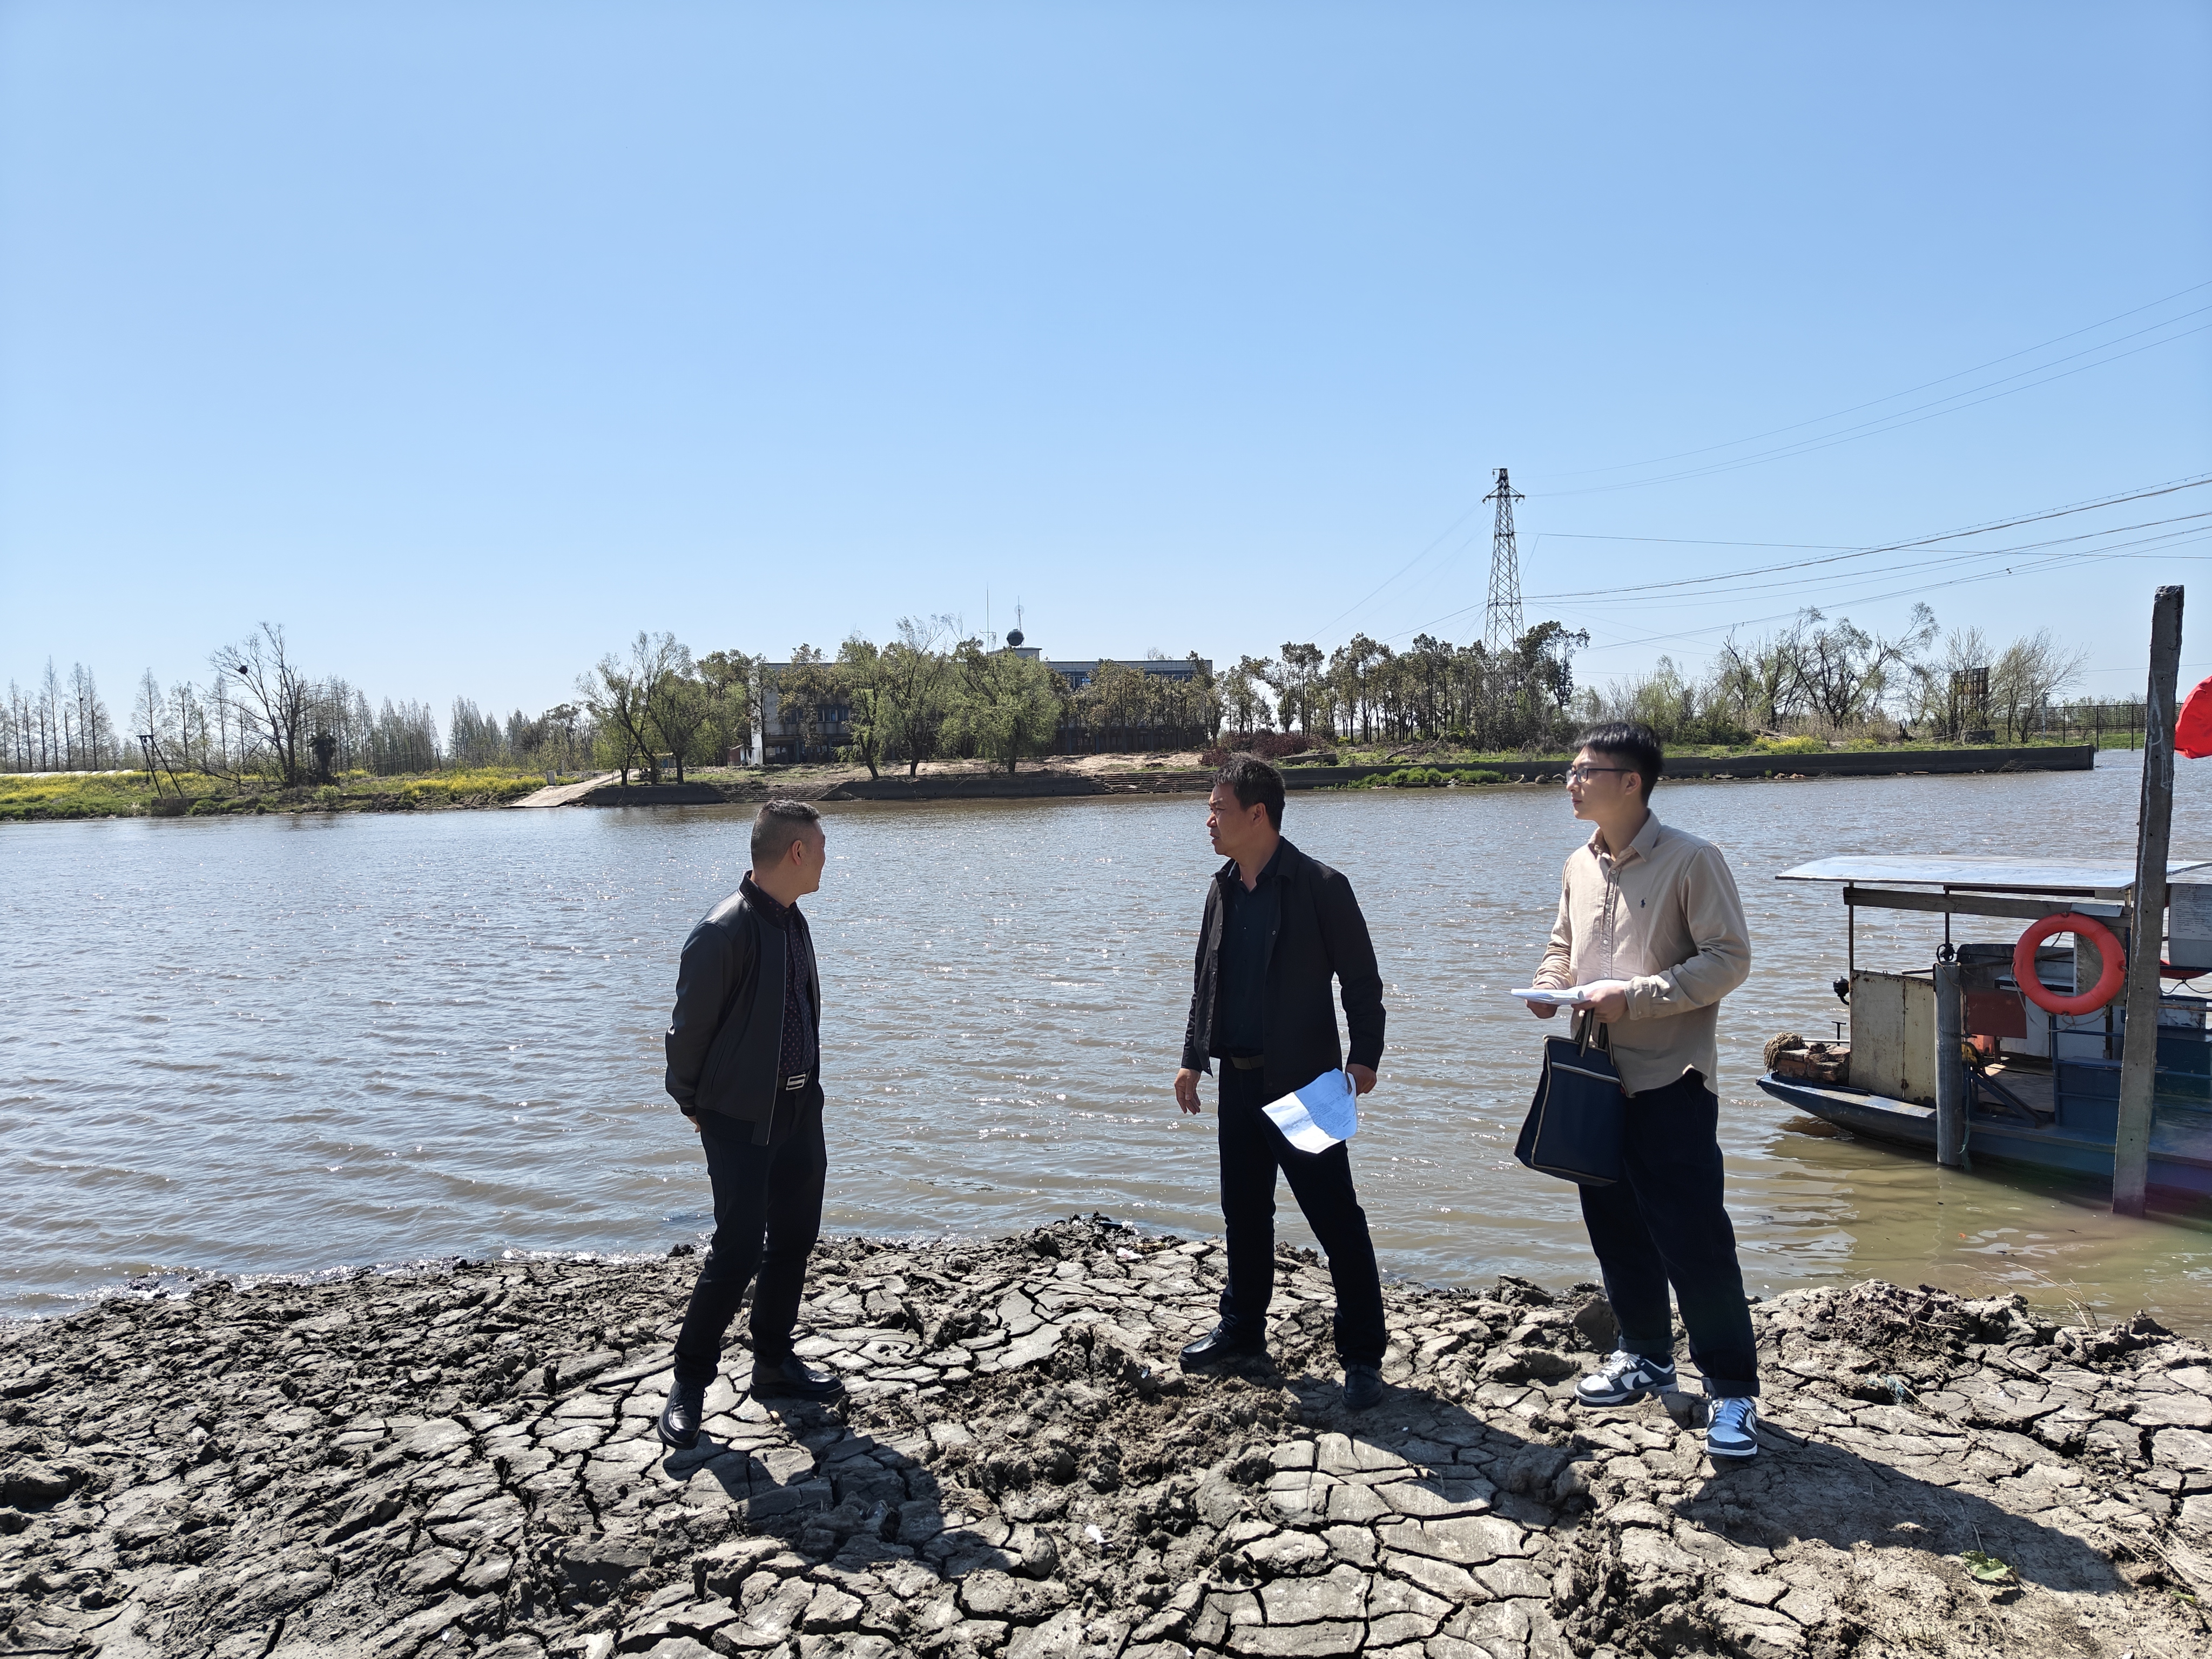 洪湖市纪委监委第三监督检查组工作人员到瞿家湾镇检查入湖排污口整治情况。